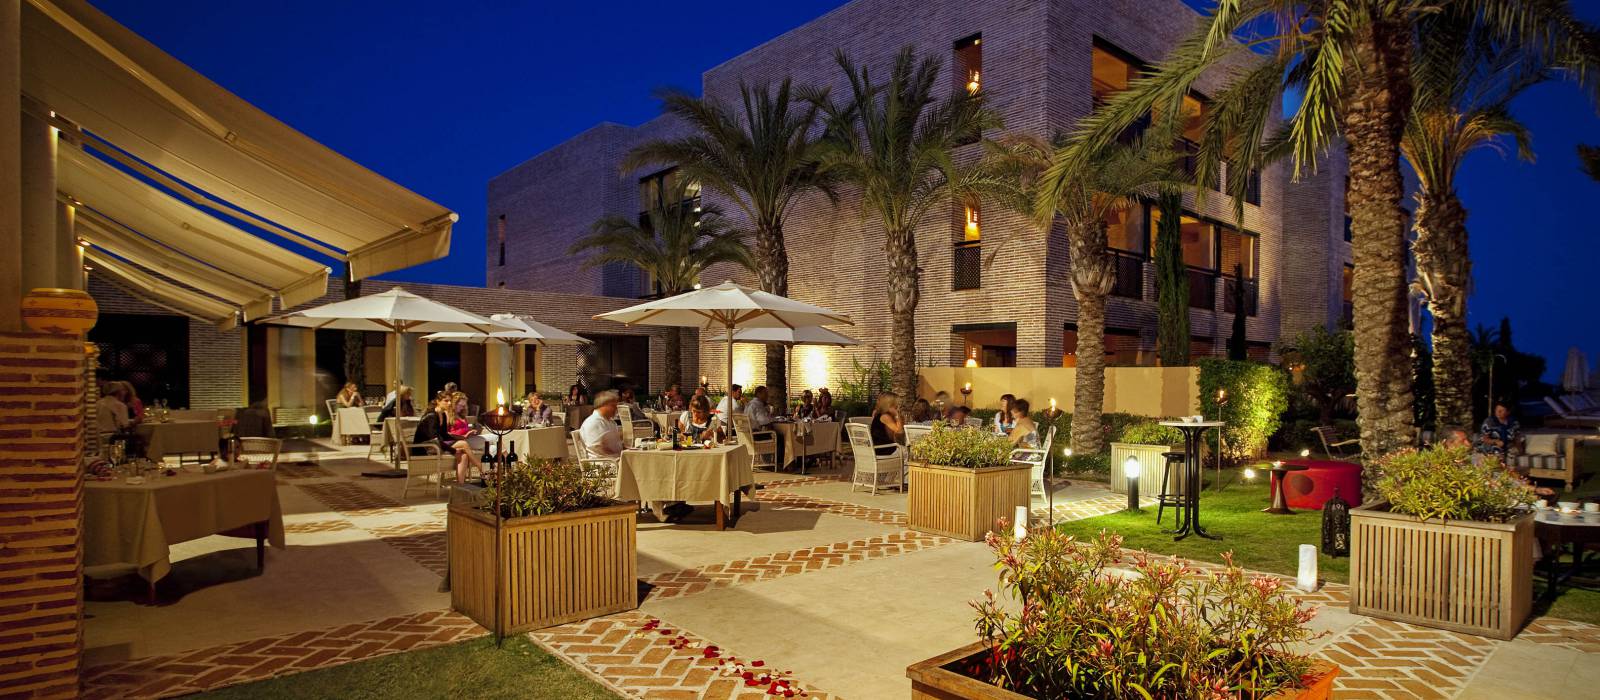 Restaurant El Mercado de Baraka Hotel Estrella de Mar - Vincci Hoteles